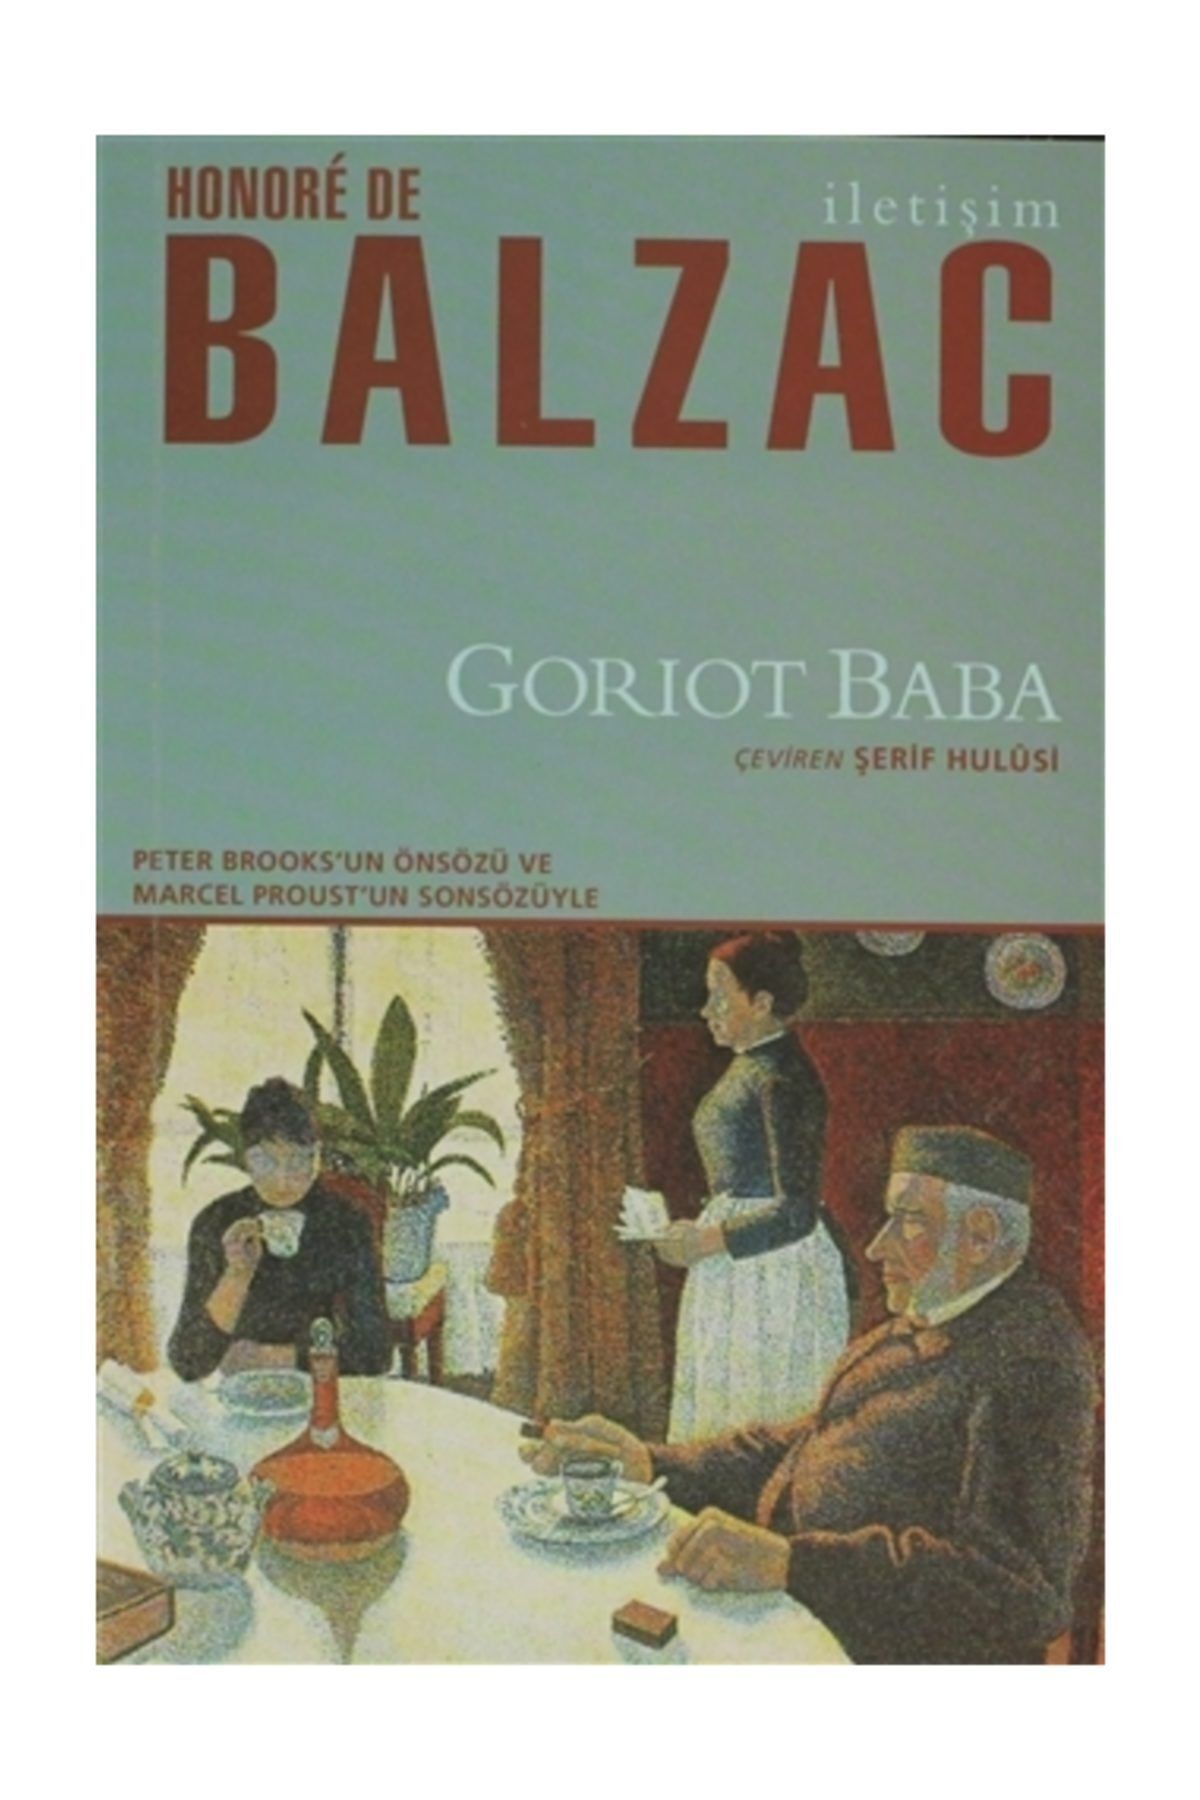 İletişim Yayınları Goriot Baba - Honore de Balzac 9789750516351